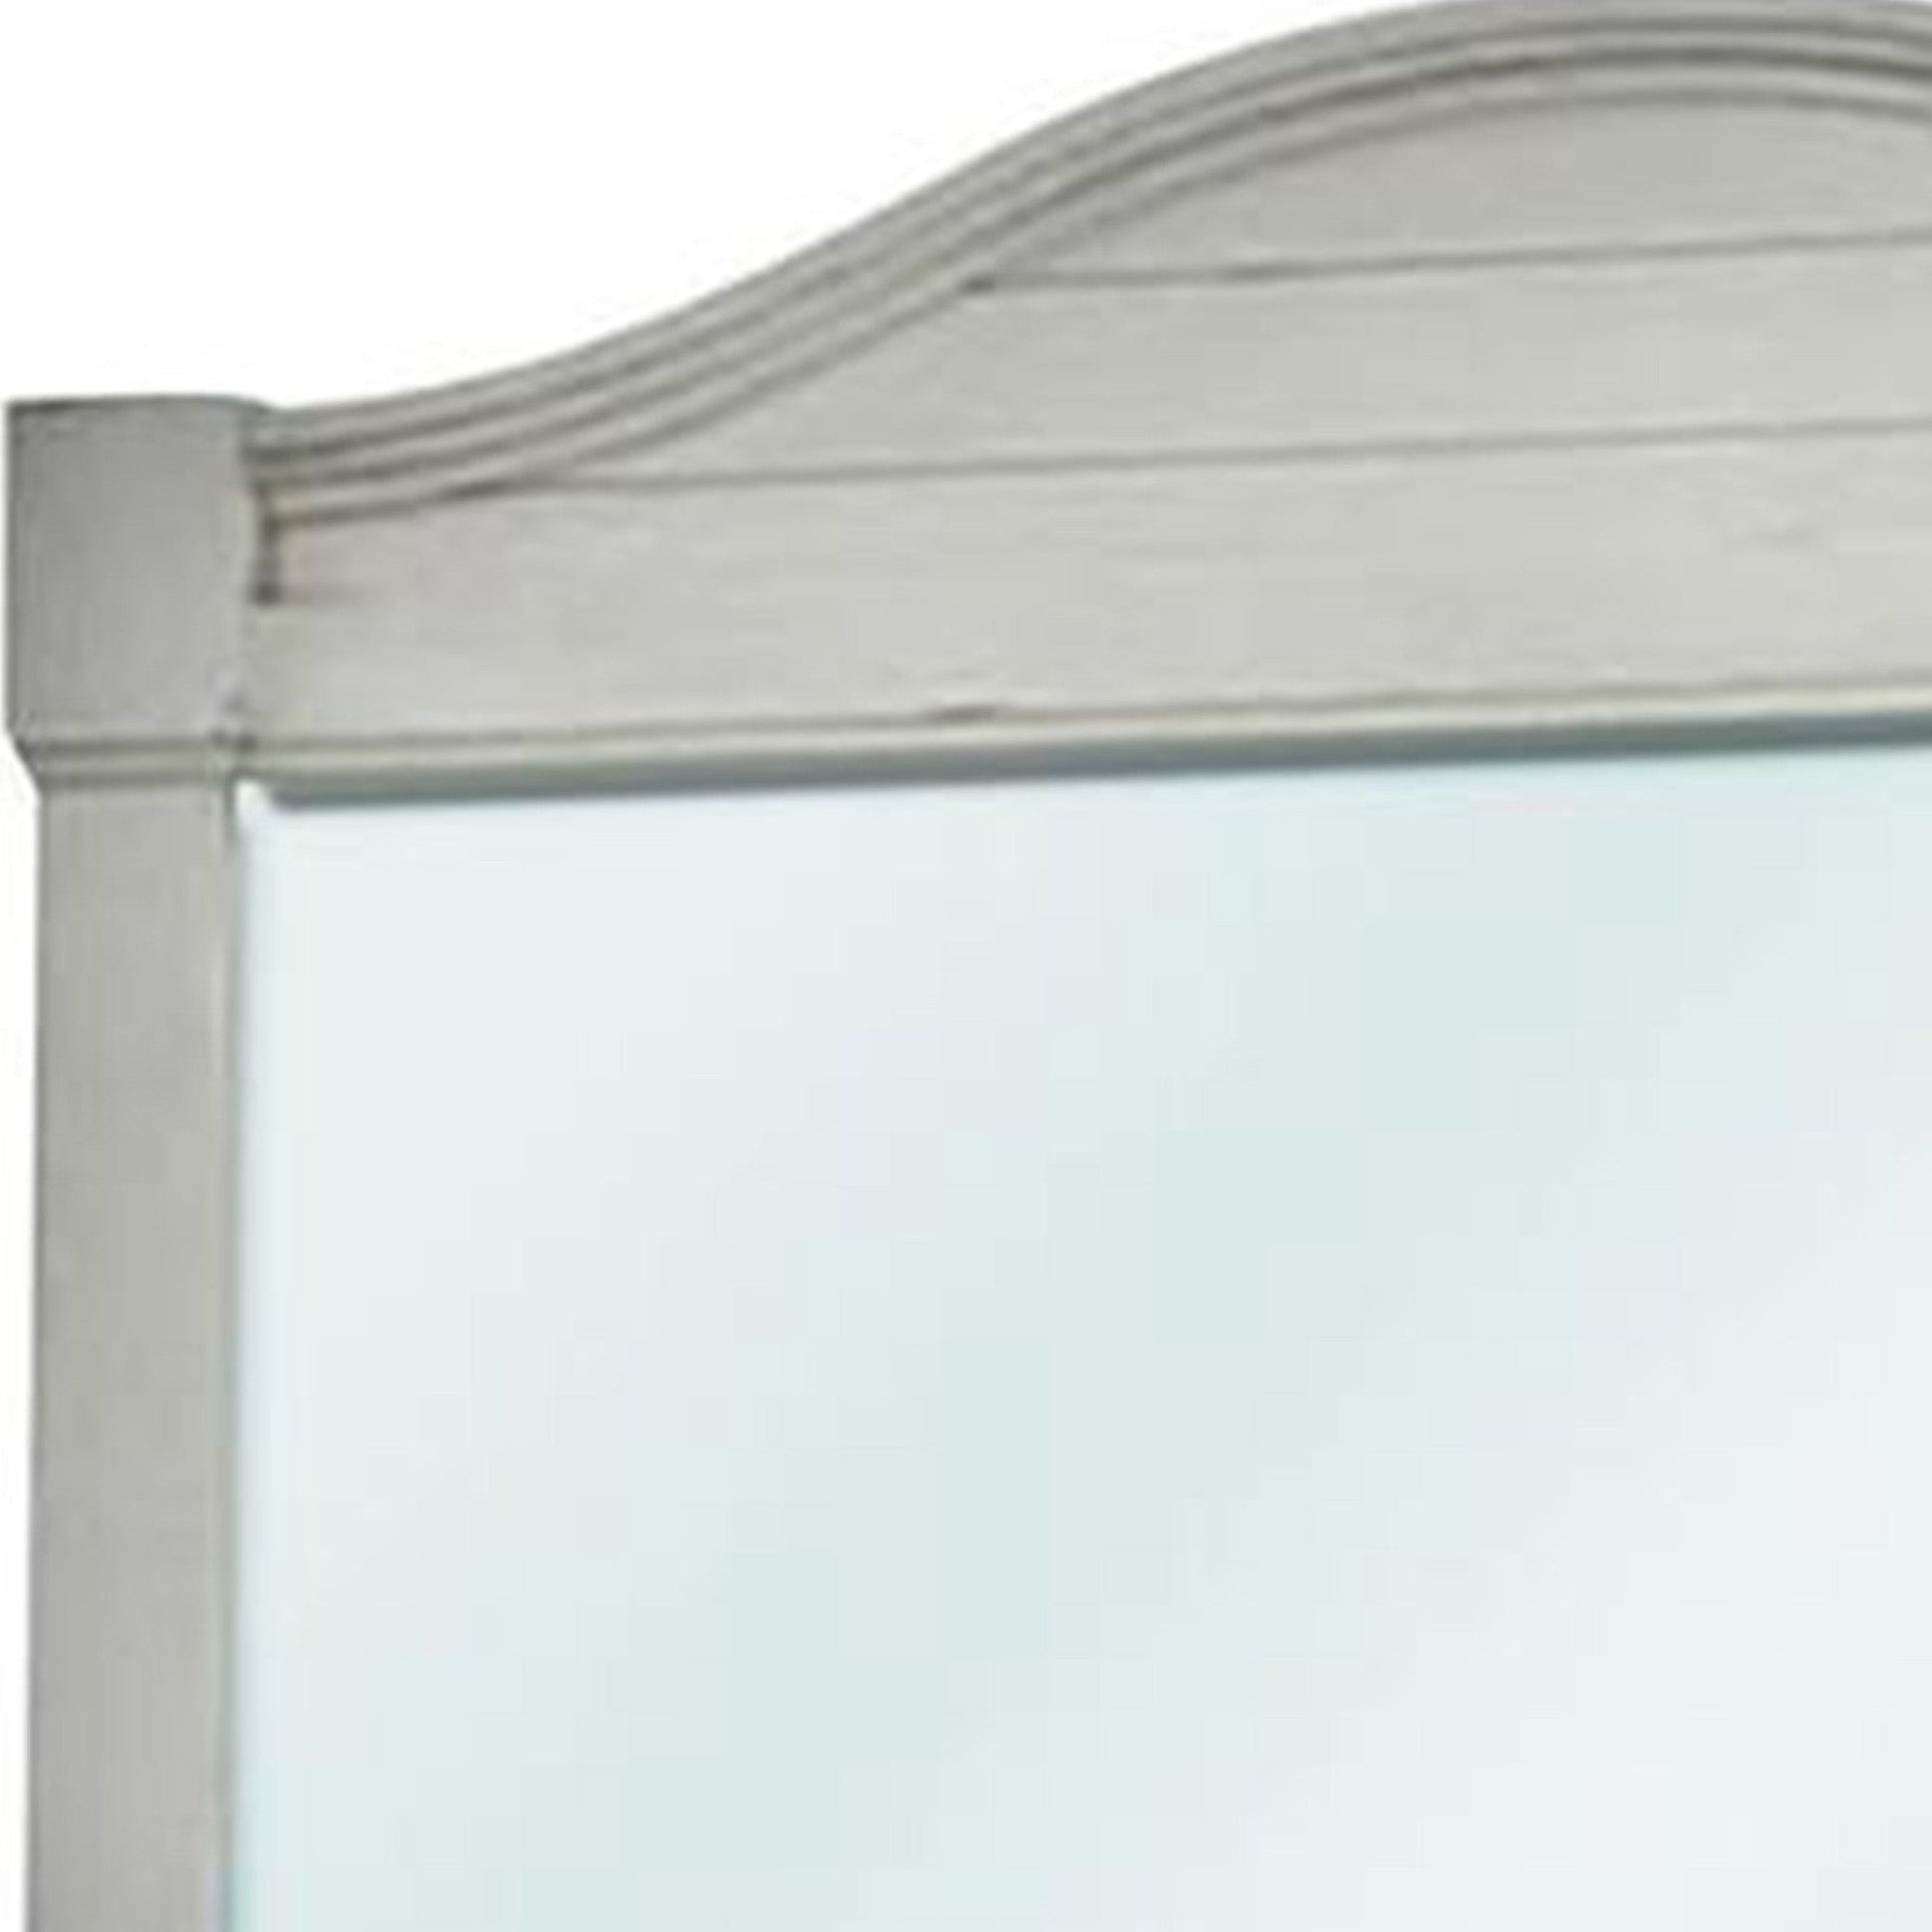 Benzara 44" White Wooden Frame Mirror With Camelback Top